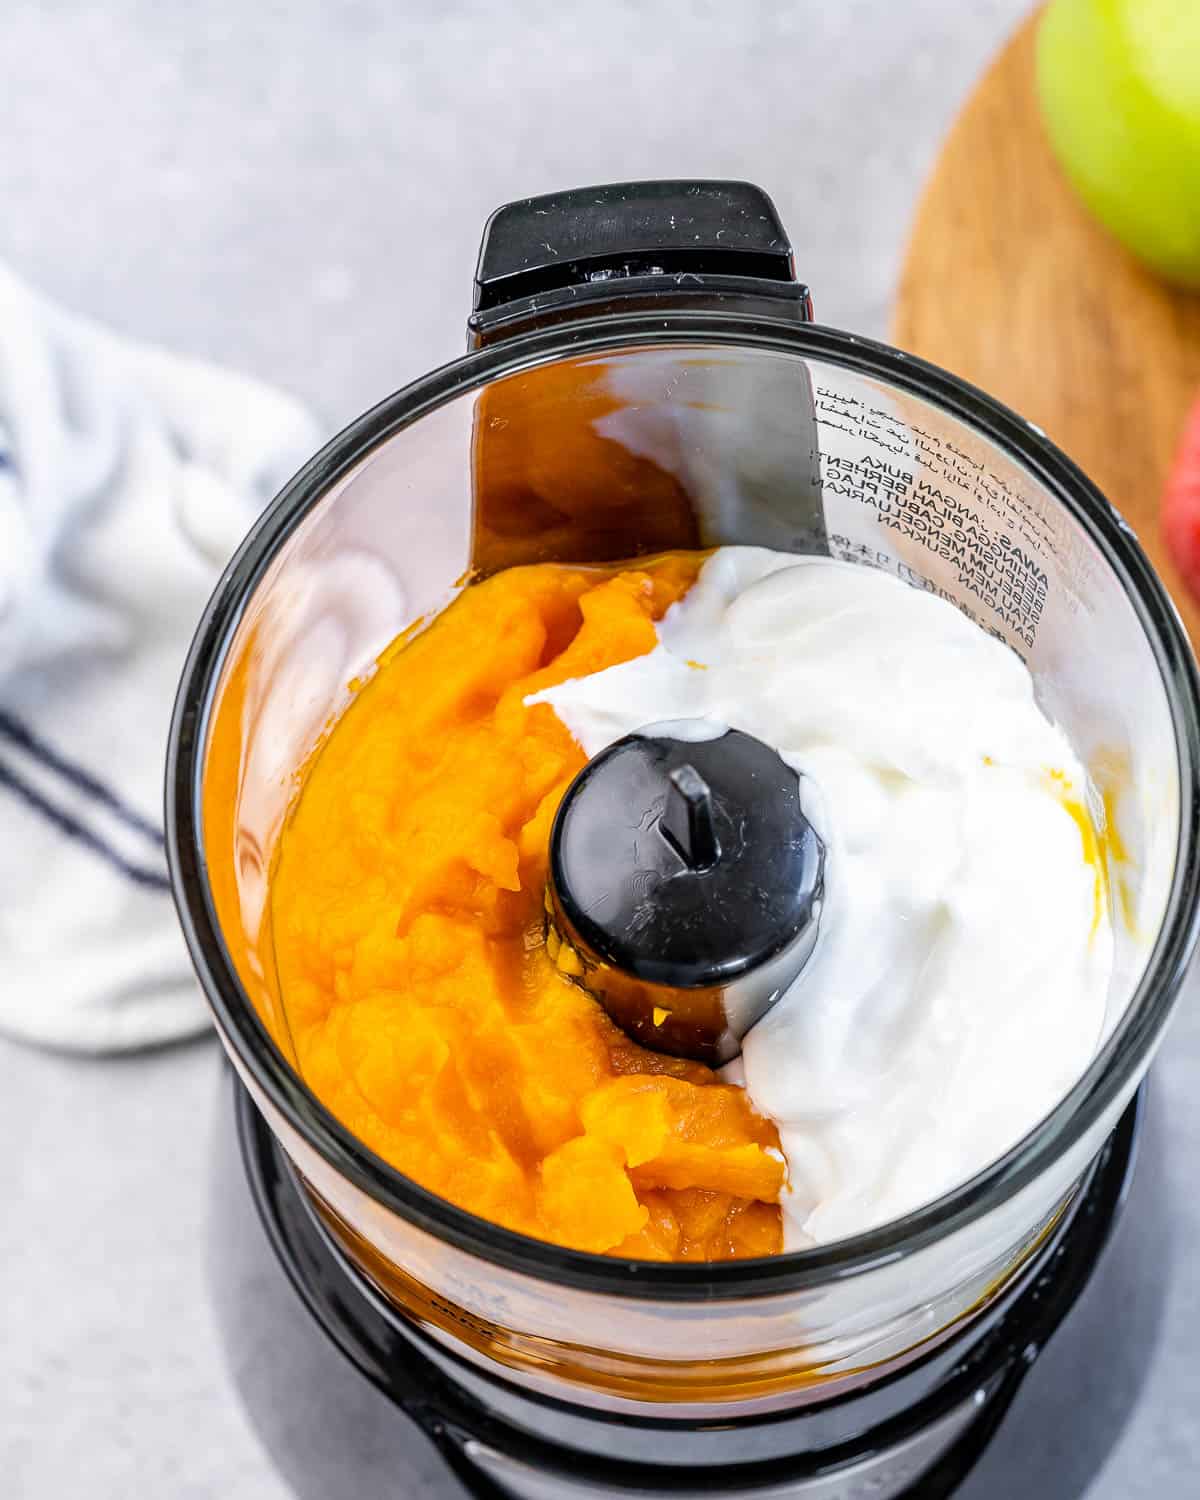 Pumpkin, greek yogurt and vanilla in a food processor.